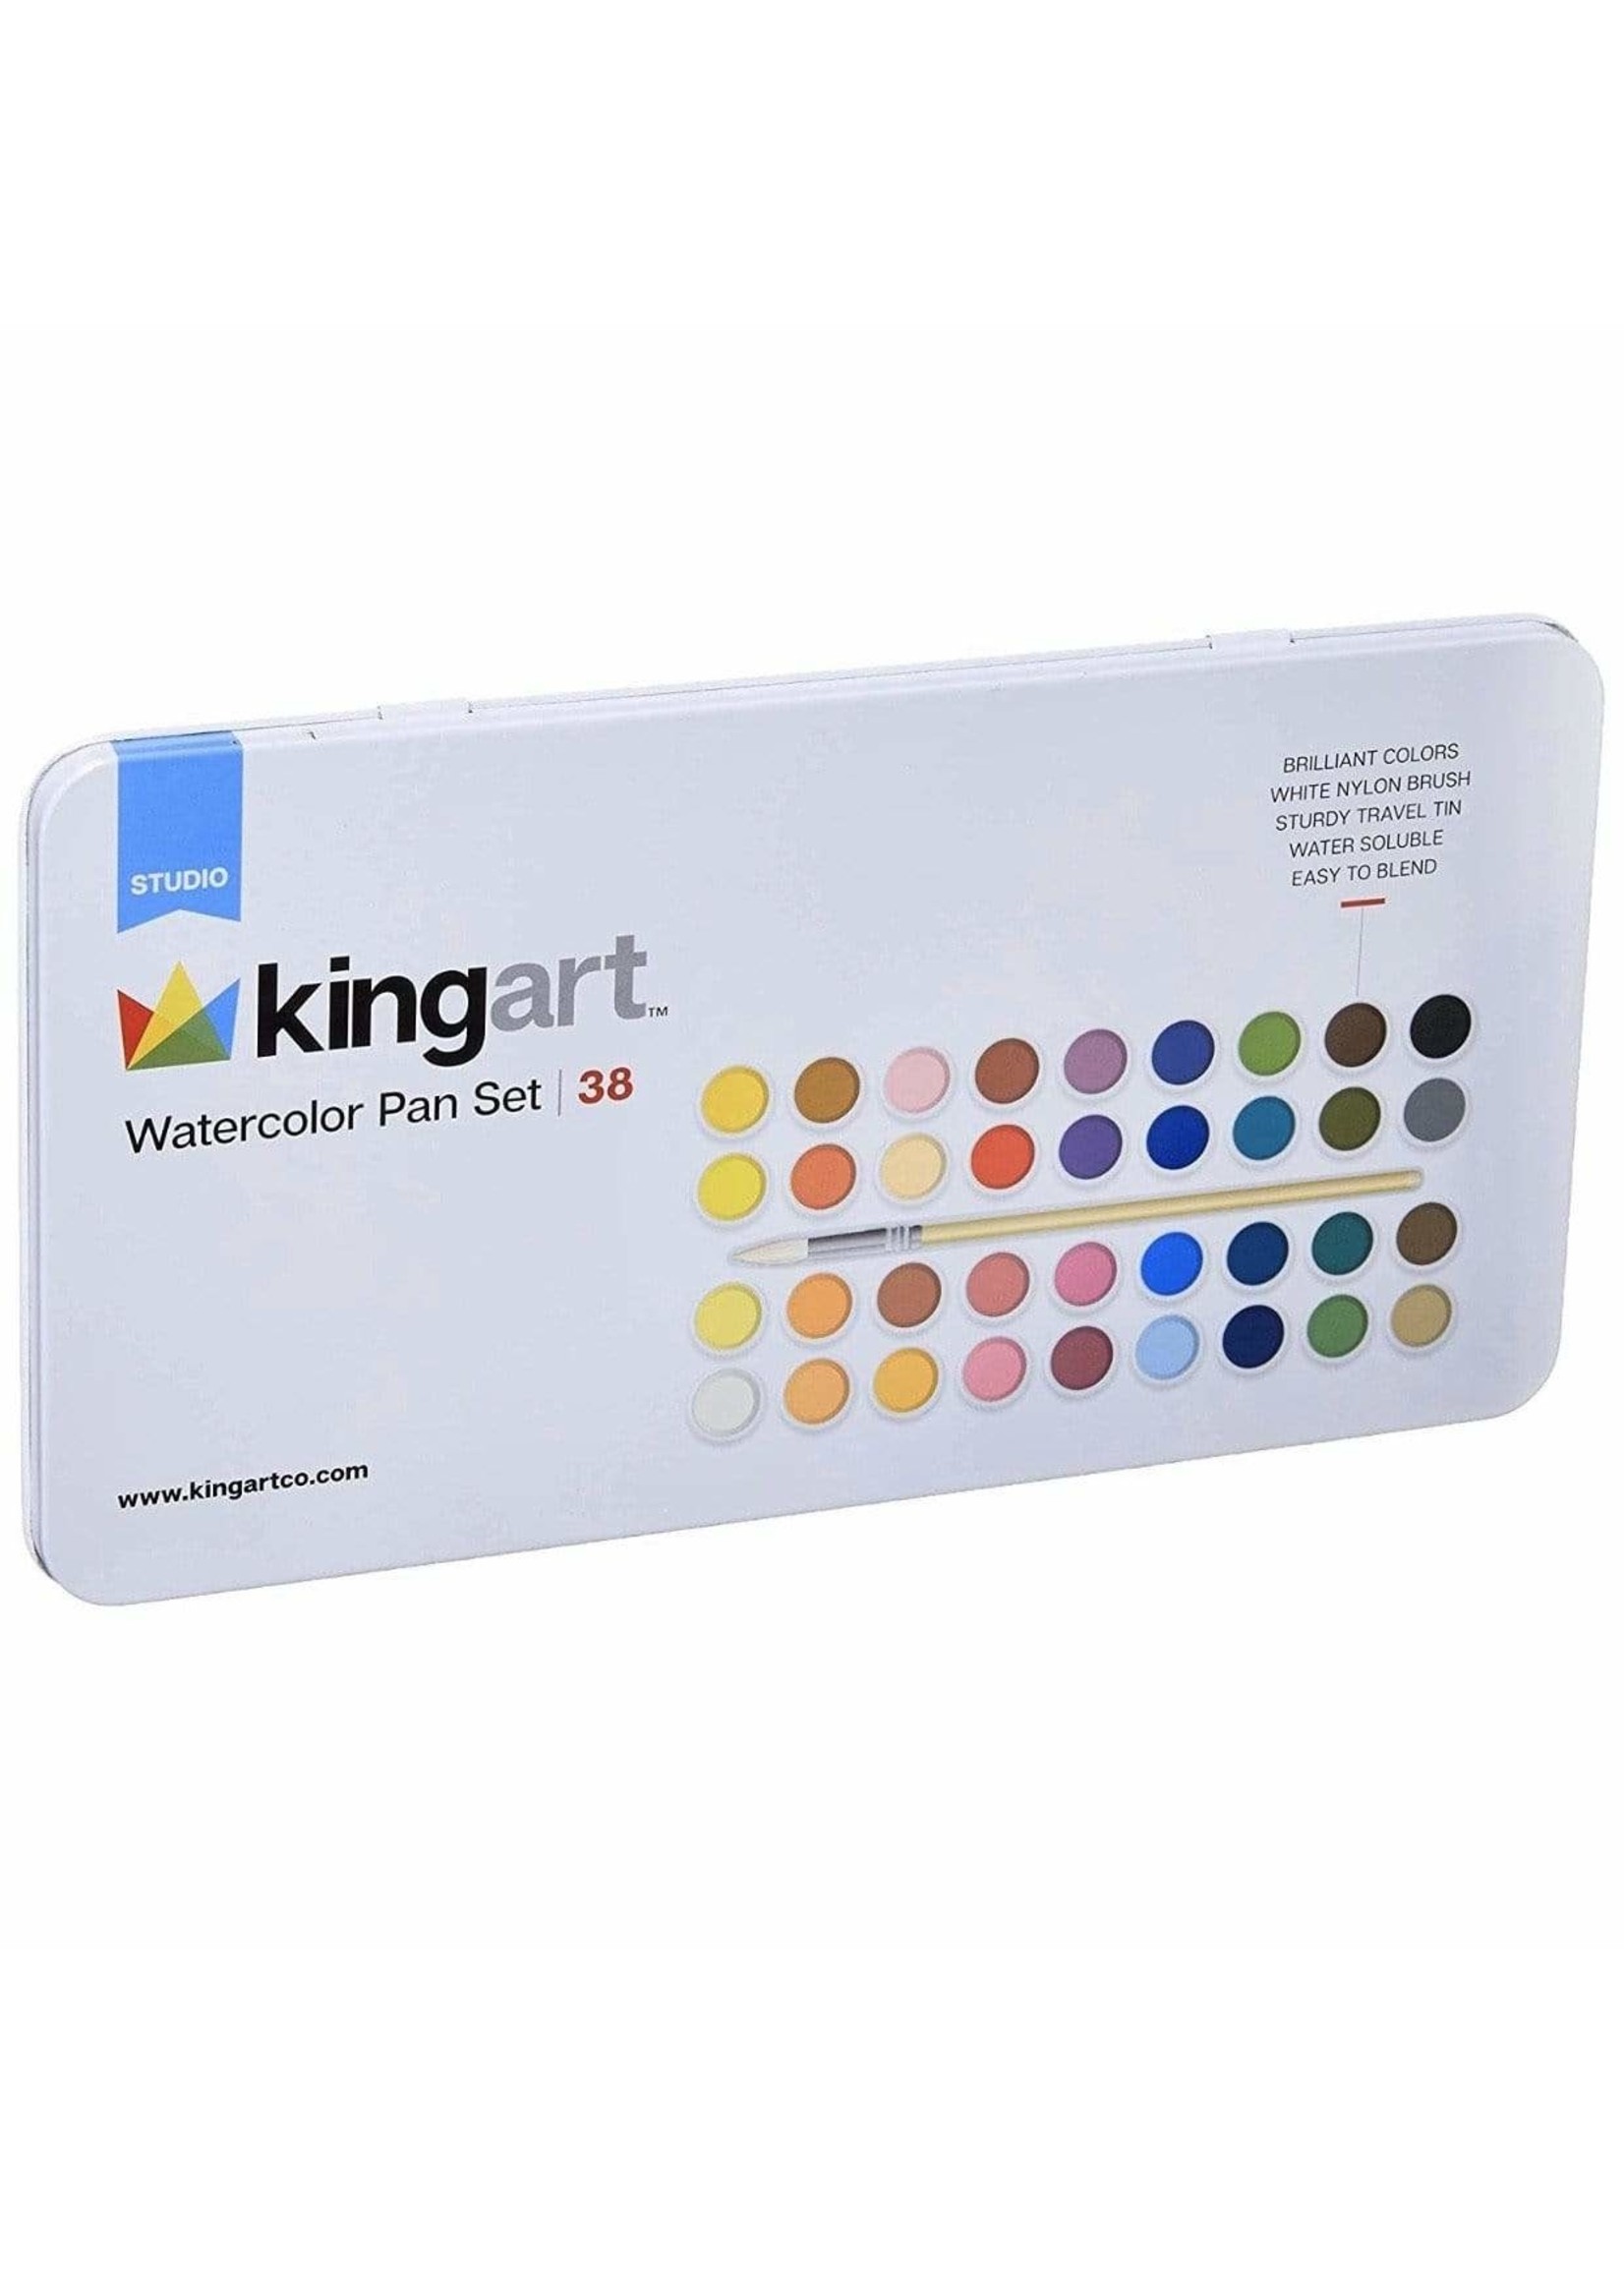 Kingart Watercolor Brush Markers - Set of 36